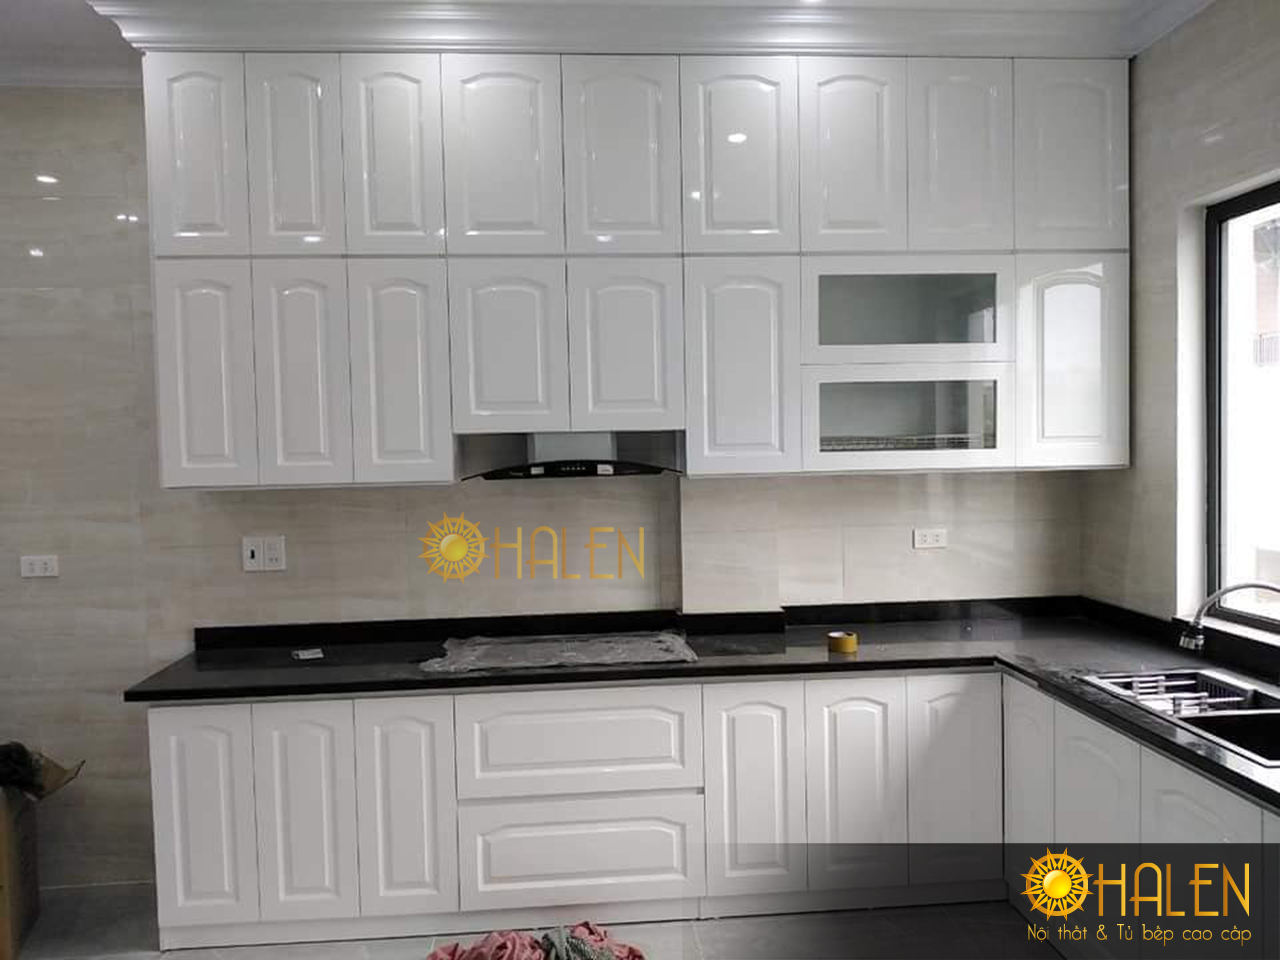 Sử dụng tone màu trắng tinh tế và tạo cảm giác sang trọng cho không gian bếp